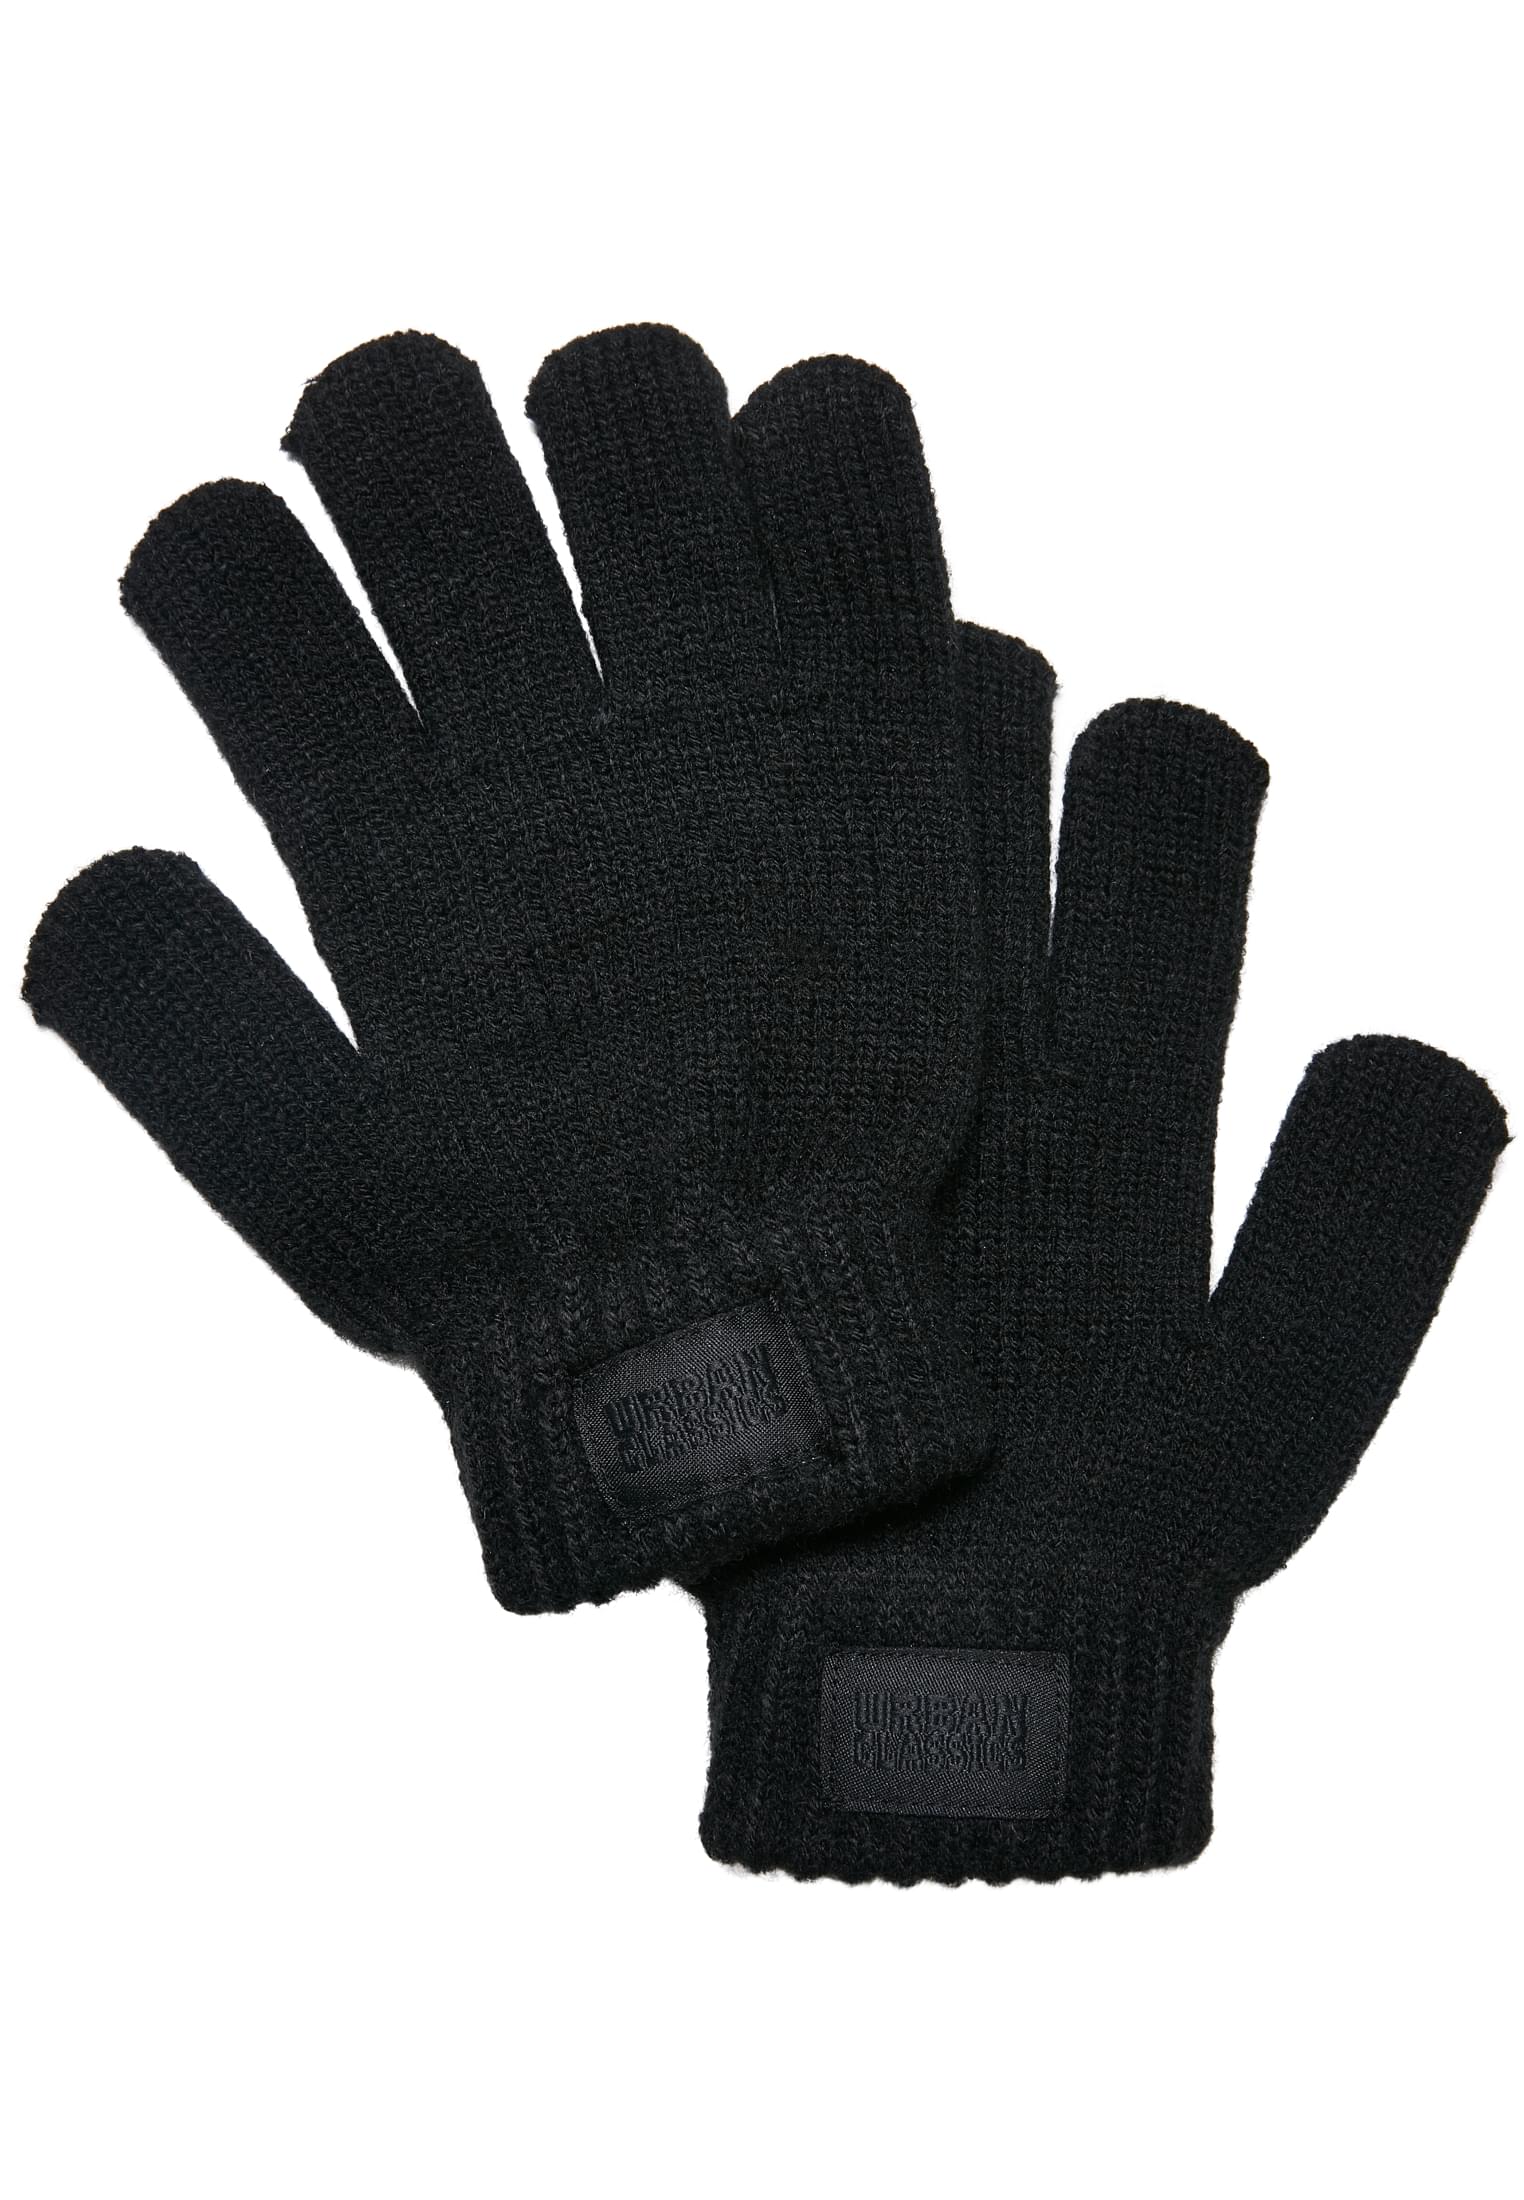 Children's knitted gloves black